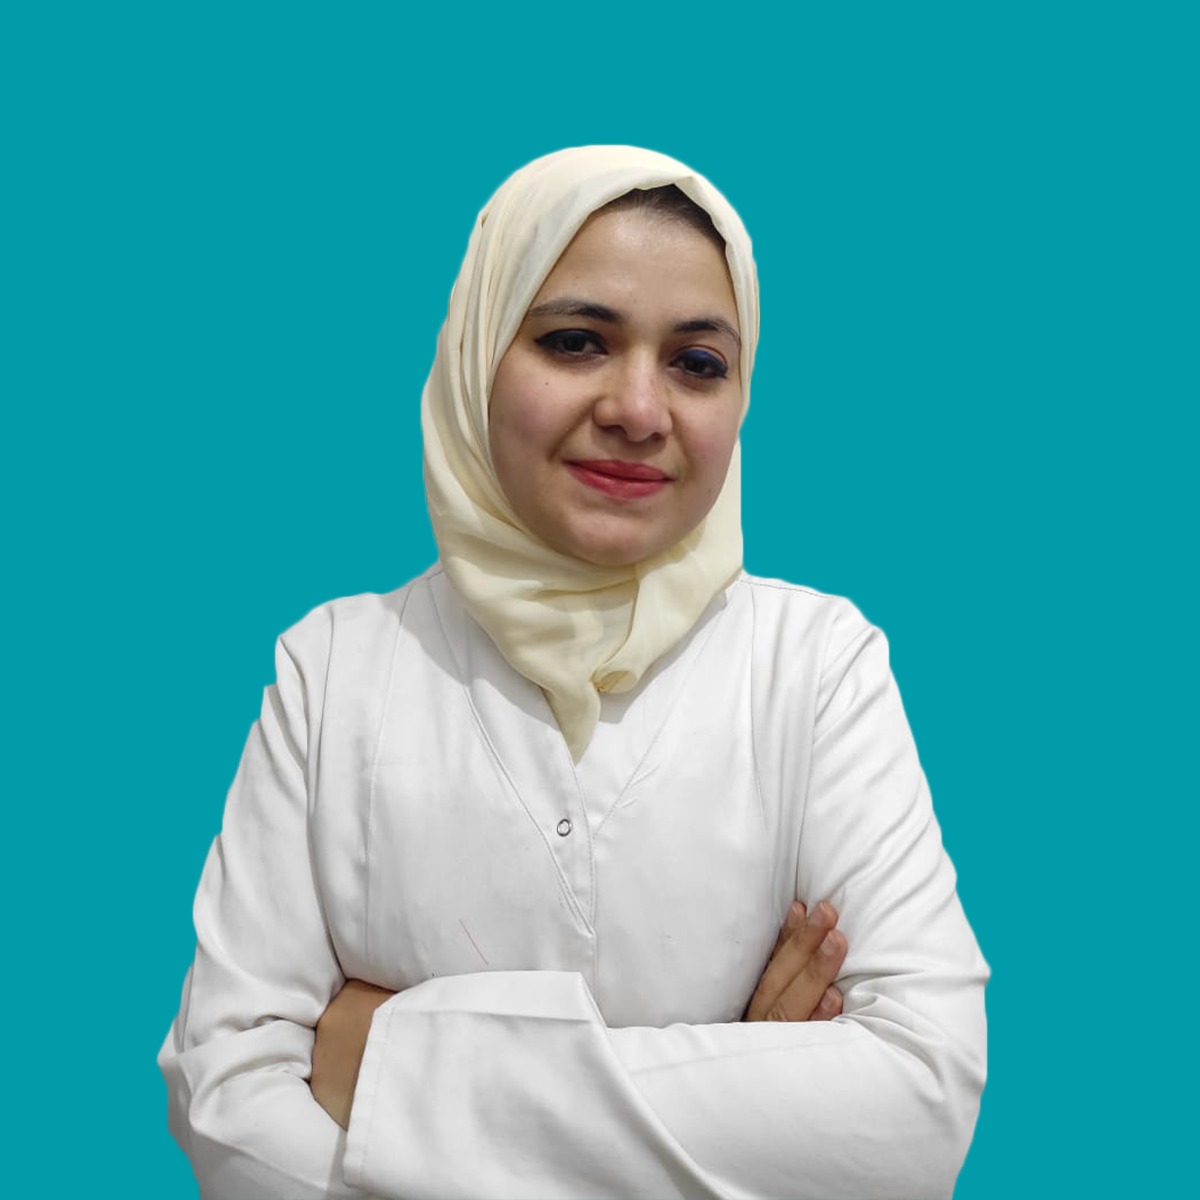 Dr. Faten Samir